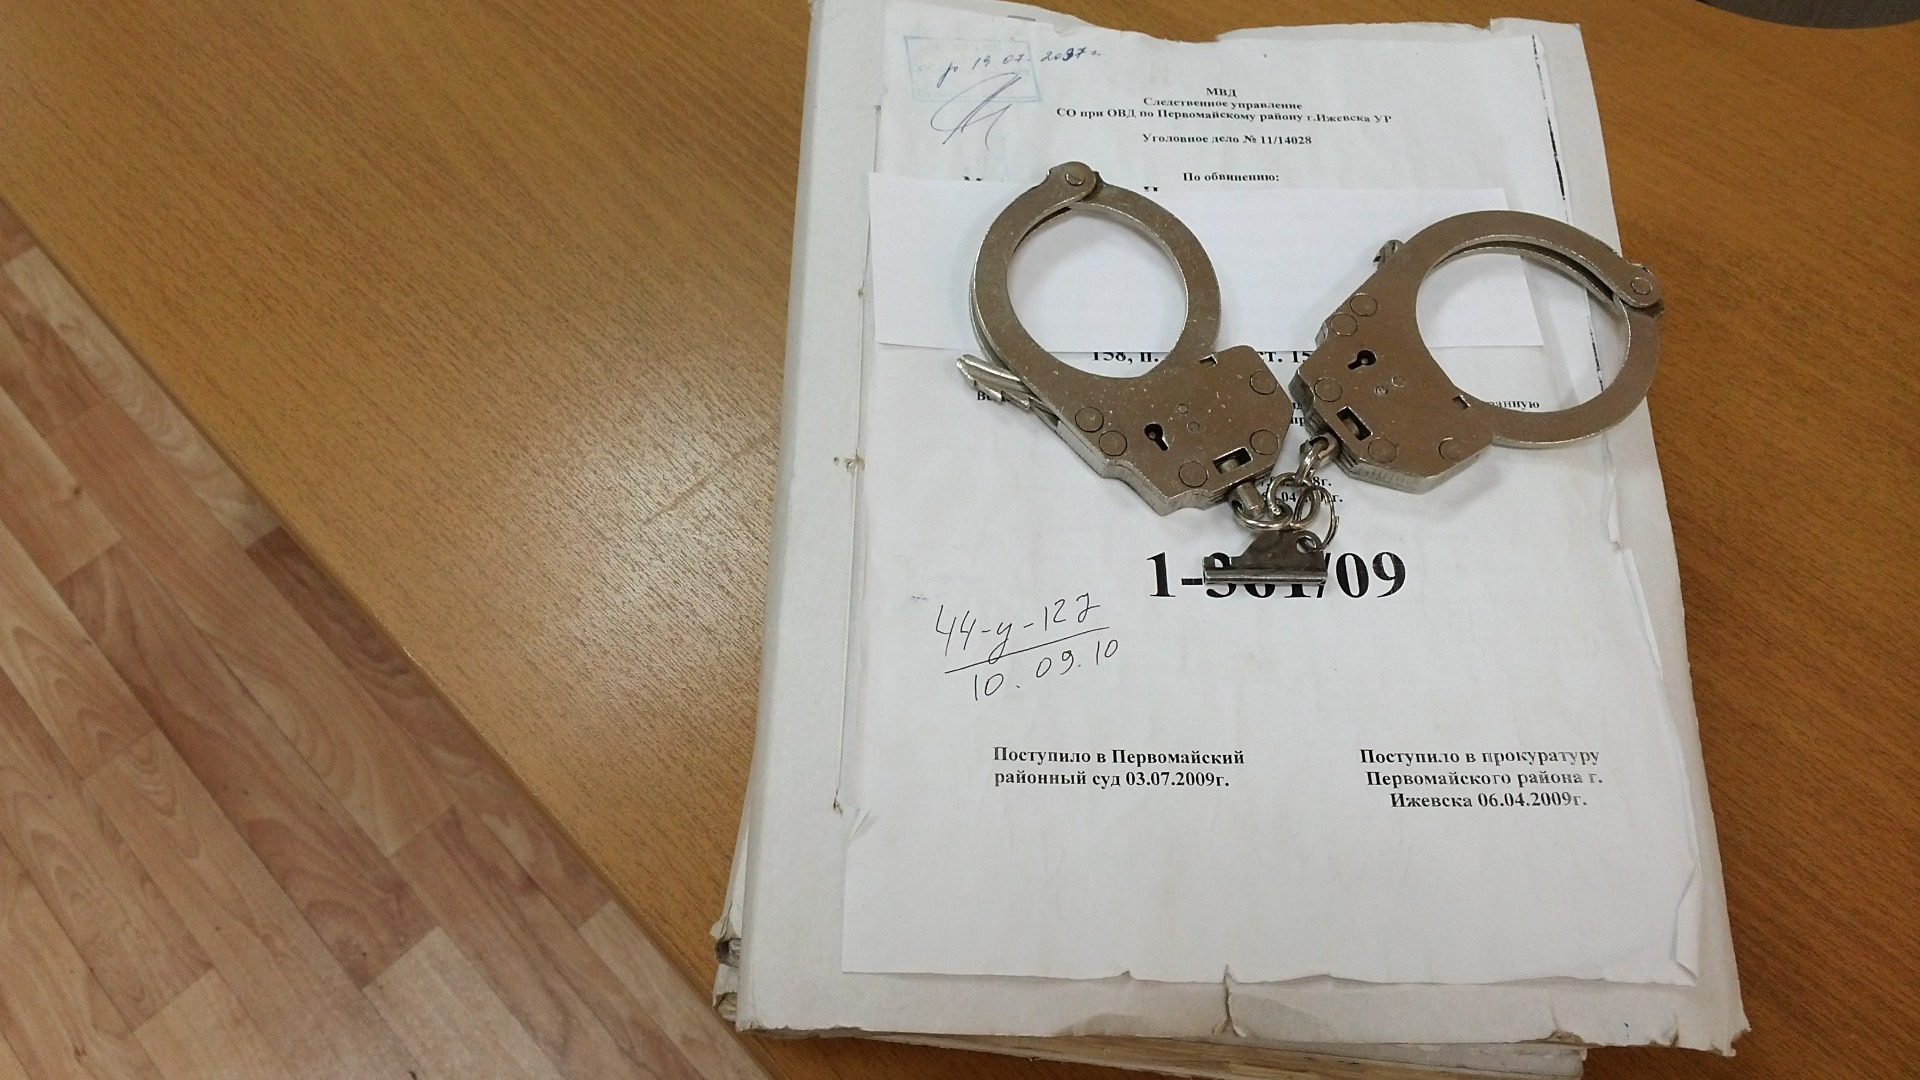 Судмедэксперта обвиняют в получении взяток в Приморском крае